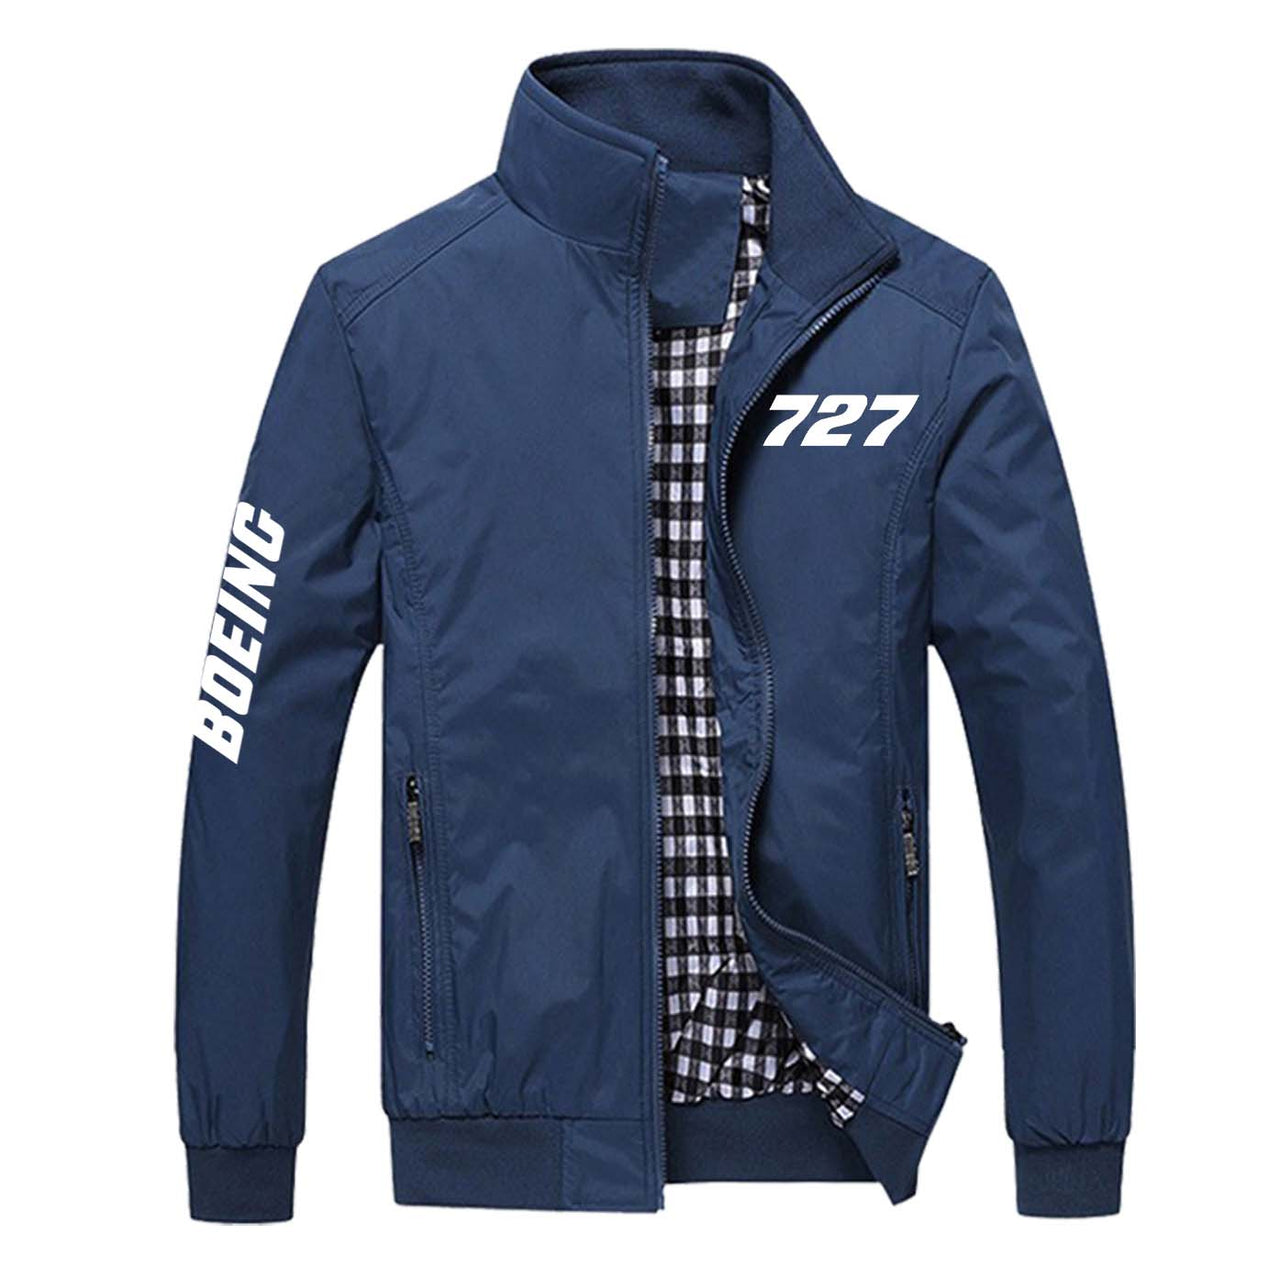 727 Flat Text Designed Stylish Jackets